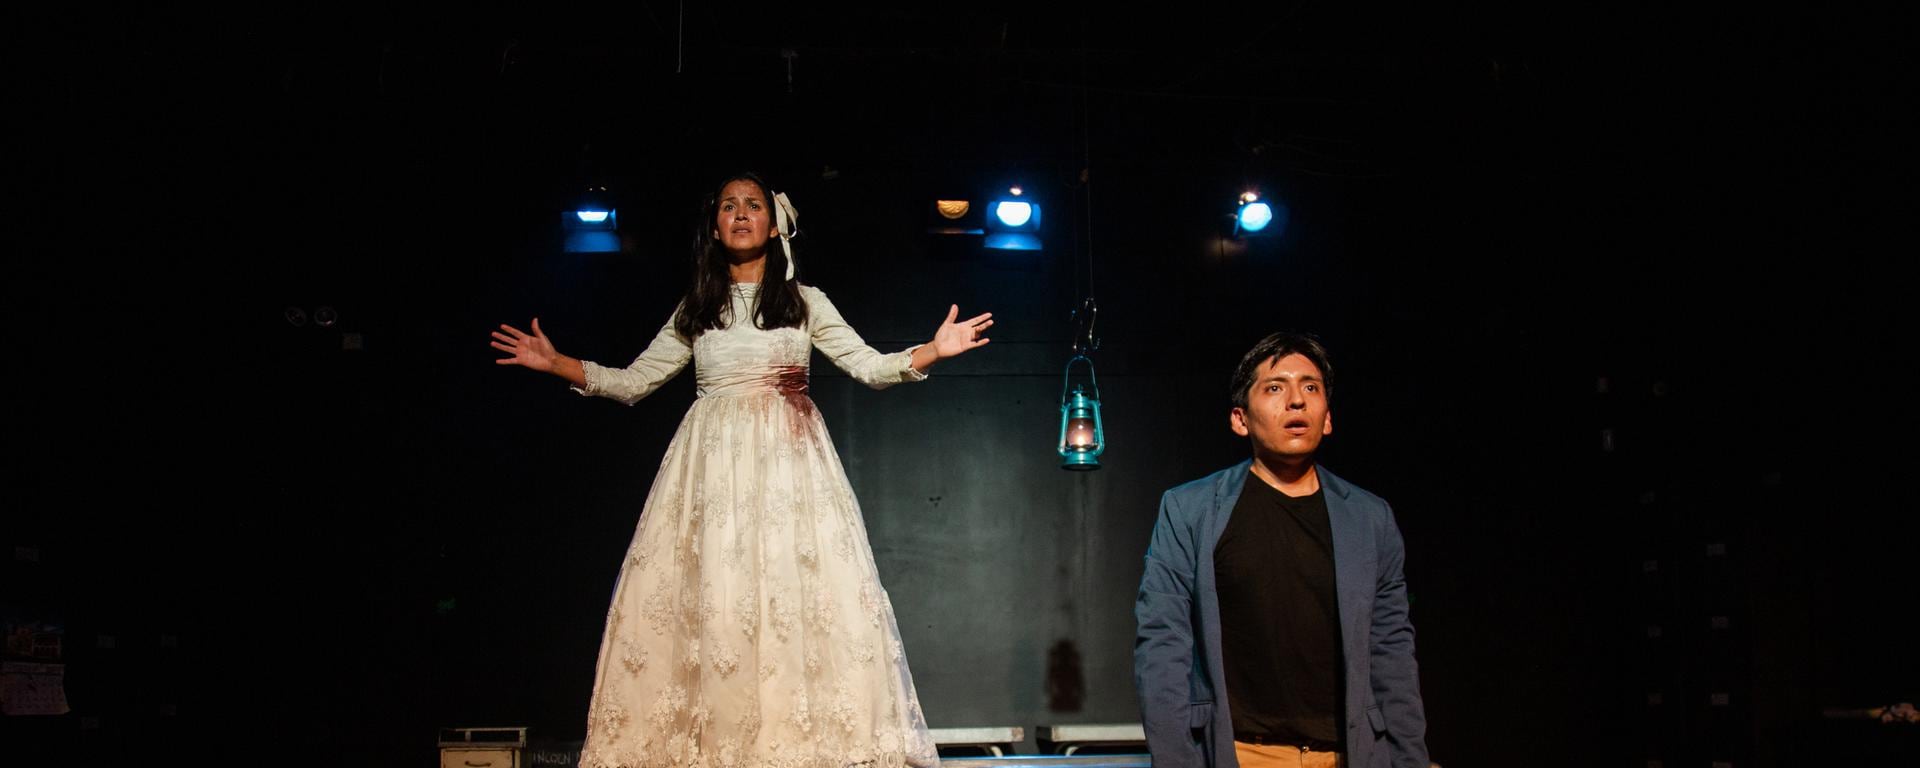 El despertar de La Cautiva: vuelve una de las obras más significativas del teatro peruano